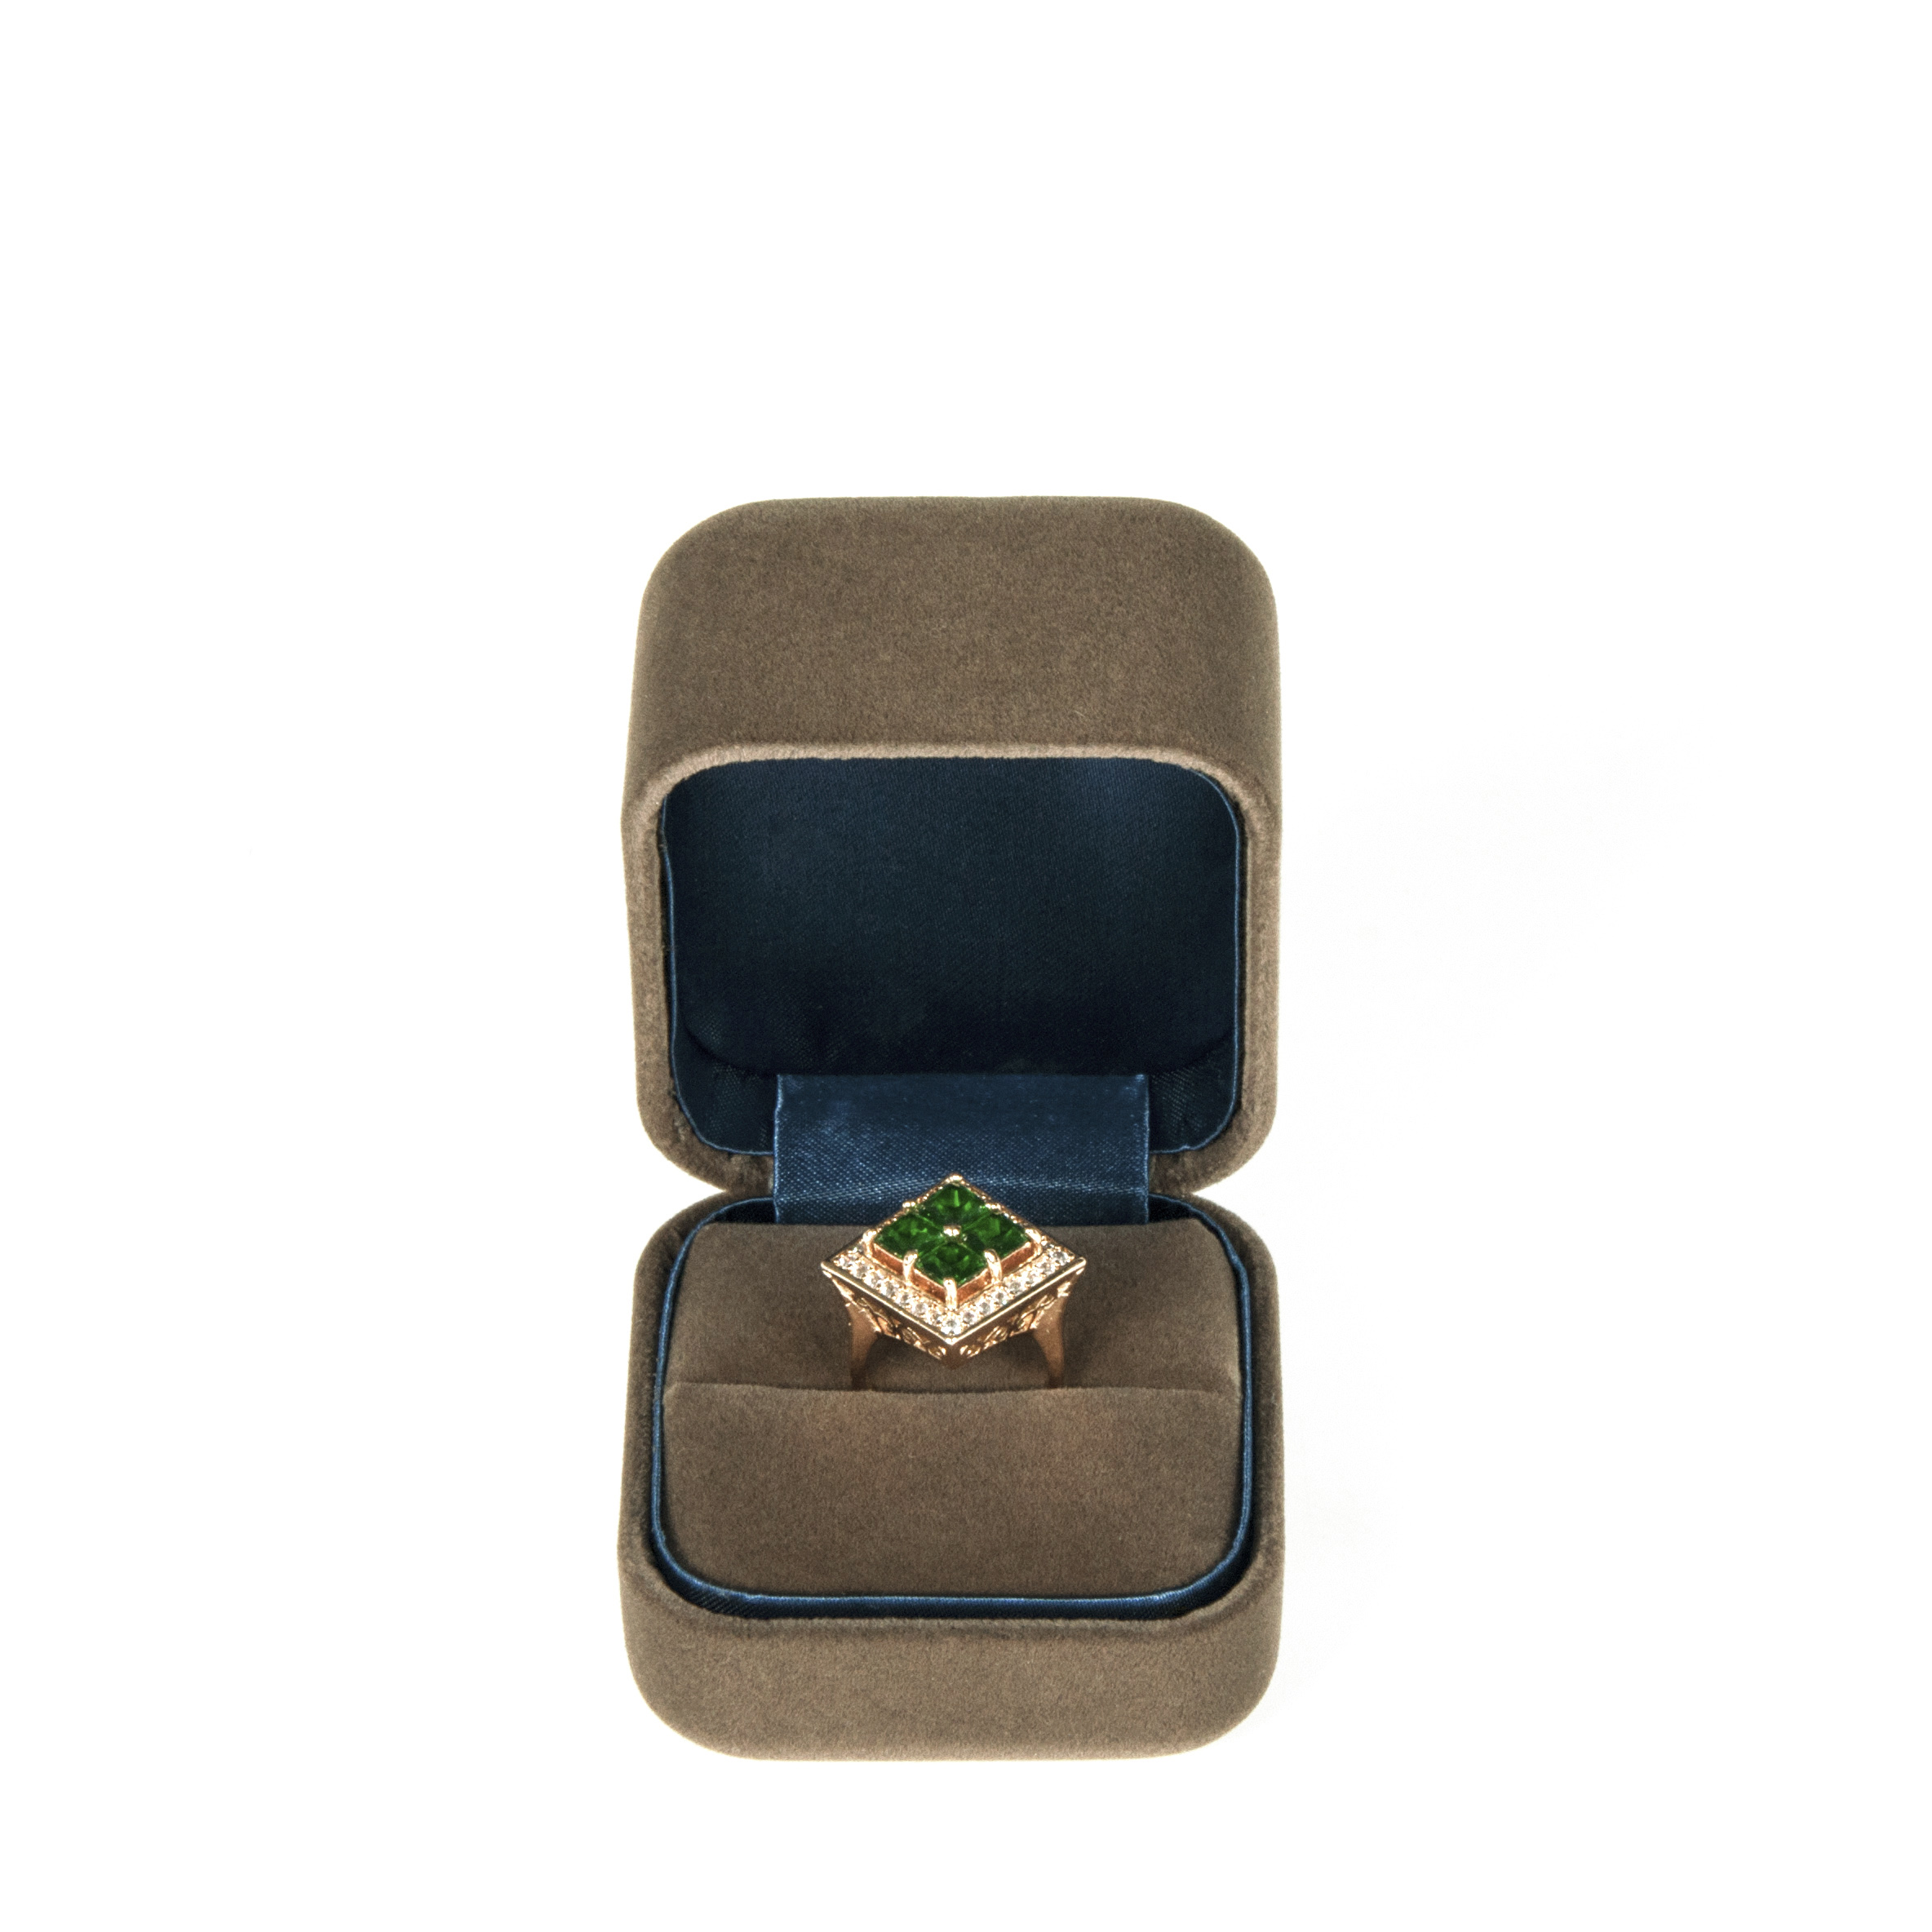 Δημοφιλή προσαρμοσμένα βελούδο σχεδιασμό κουτί δαχτυλίδι για το υψηλό τέλος πακέτο πρόστιμο κοσμήματα με λογότυπο που εκτυπώνεται με αρίστης ποιότητας.